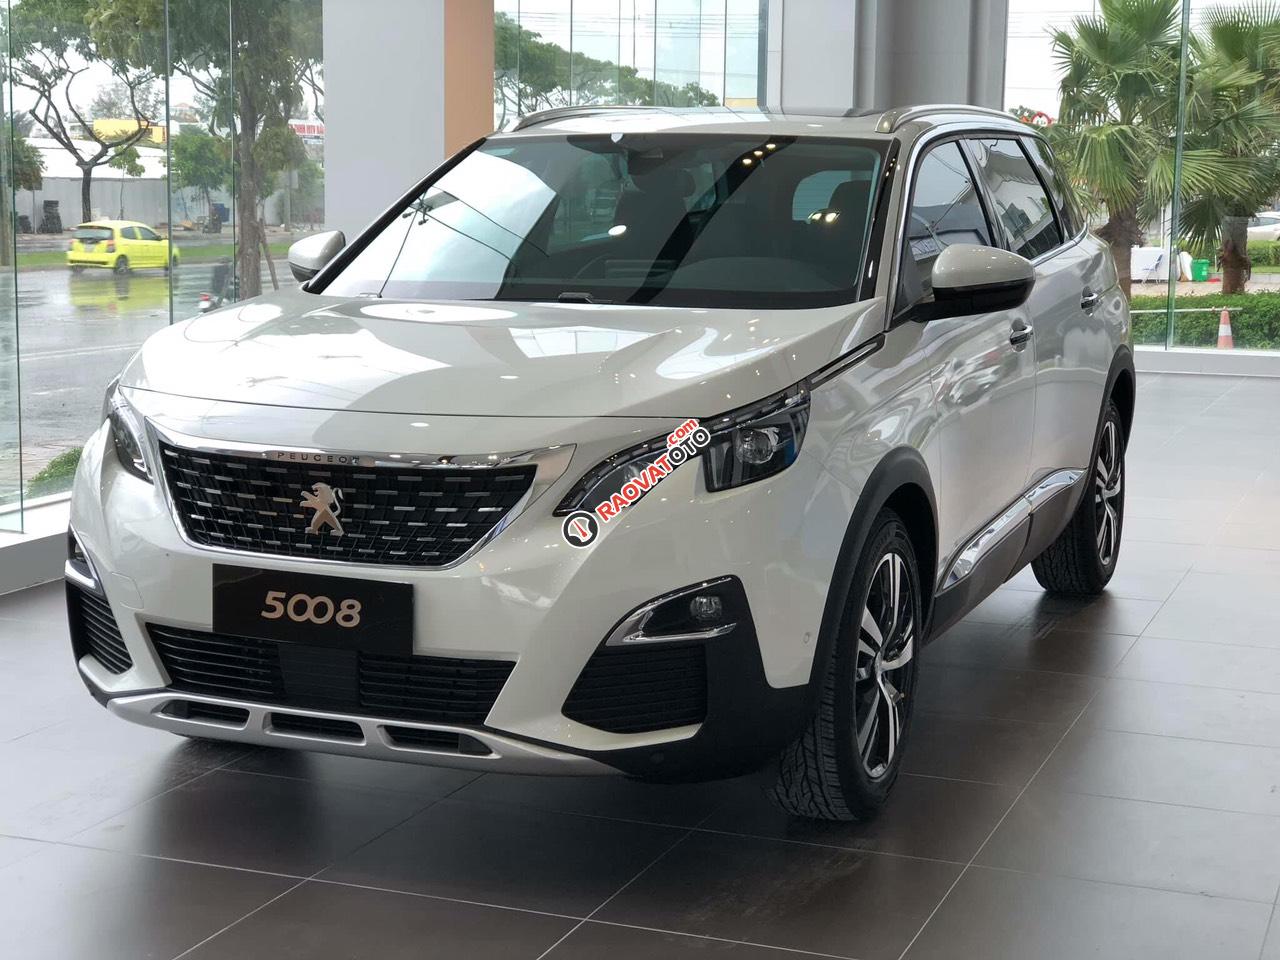 Cần bán xe Peugeot 5008 1.6AT đời 2019 new 100%, màu trắng, giá chỉ 1 tỷ 349 triệu đồng-6